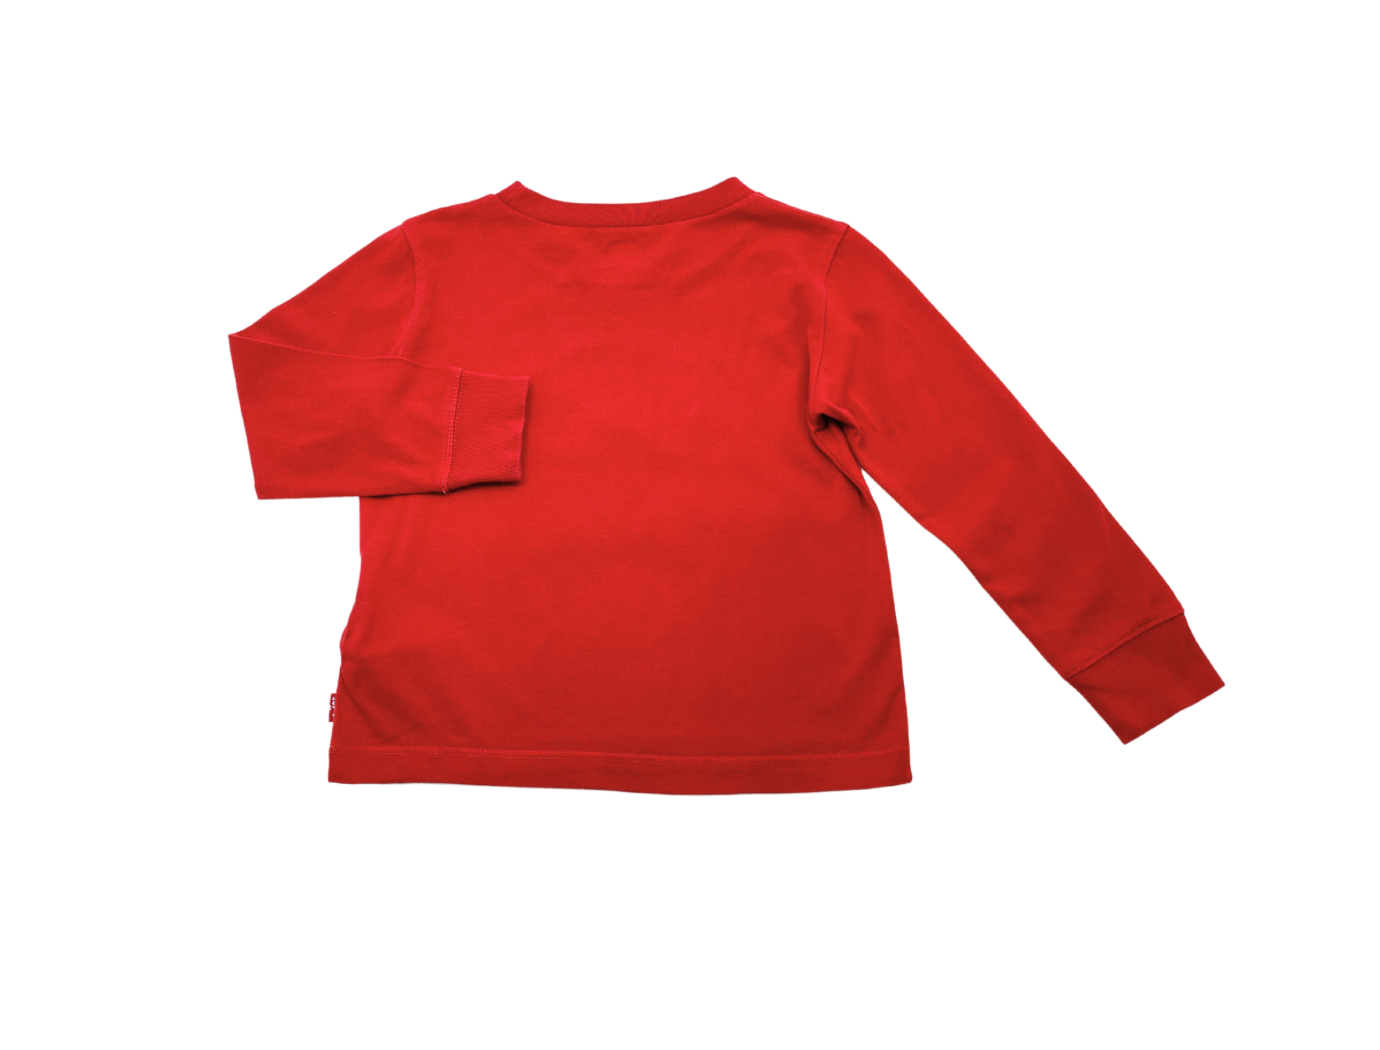 LEVI'S - T-shirt rouge - 2 ans